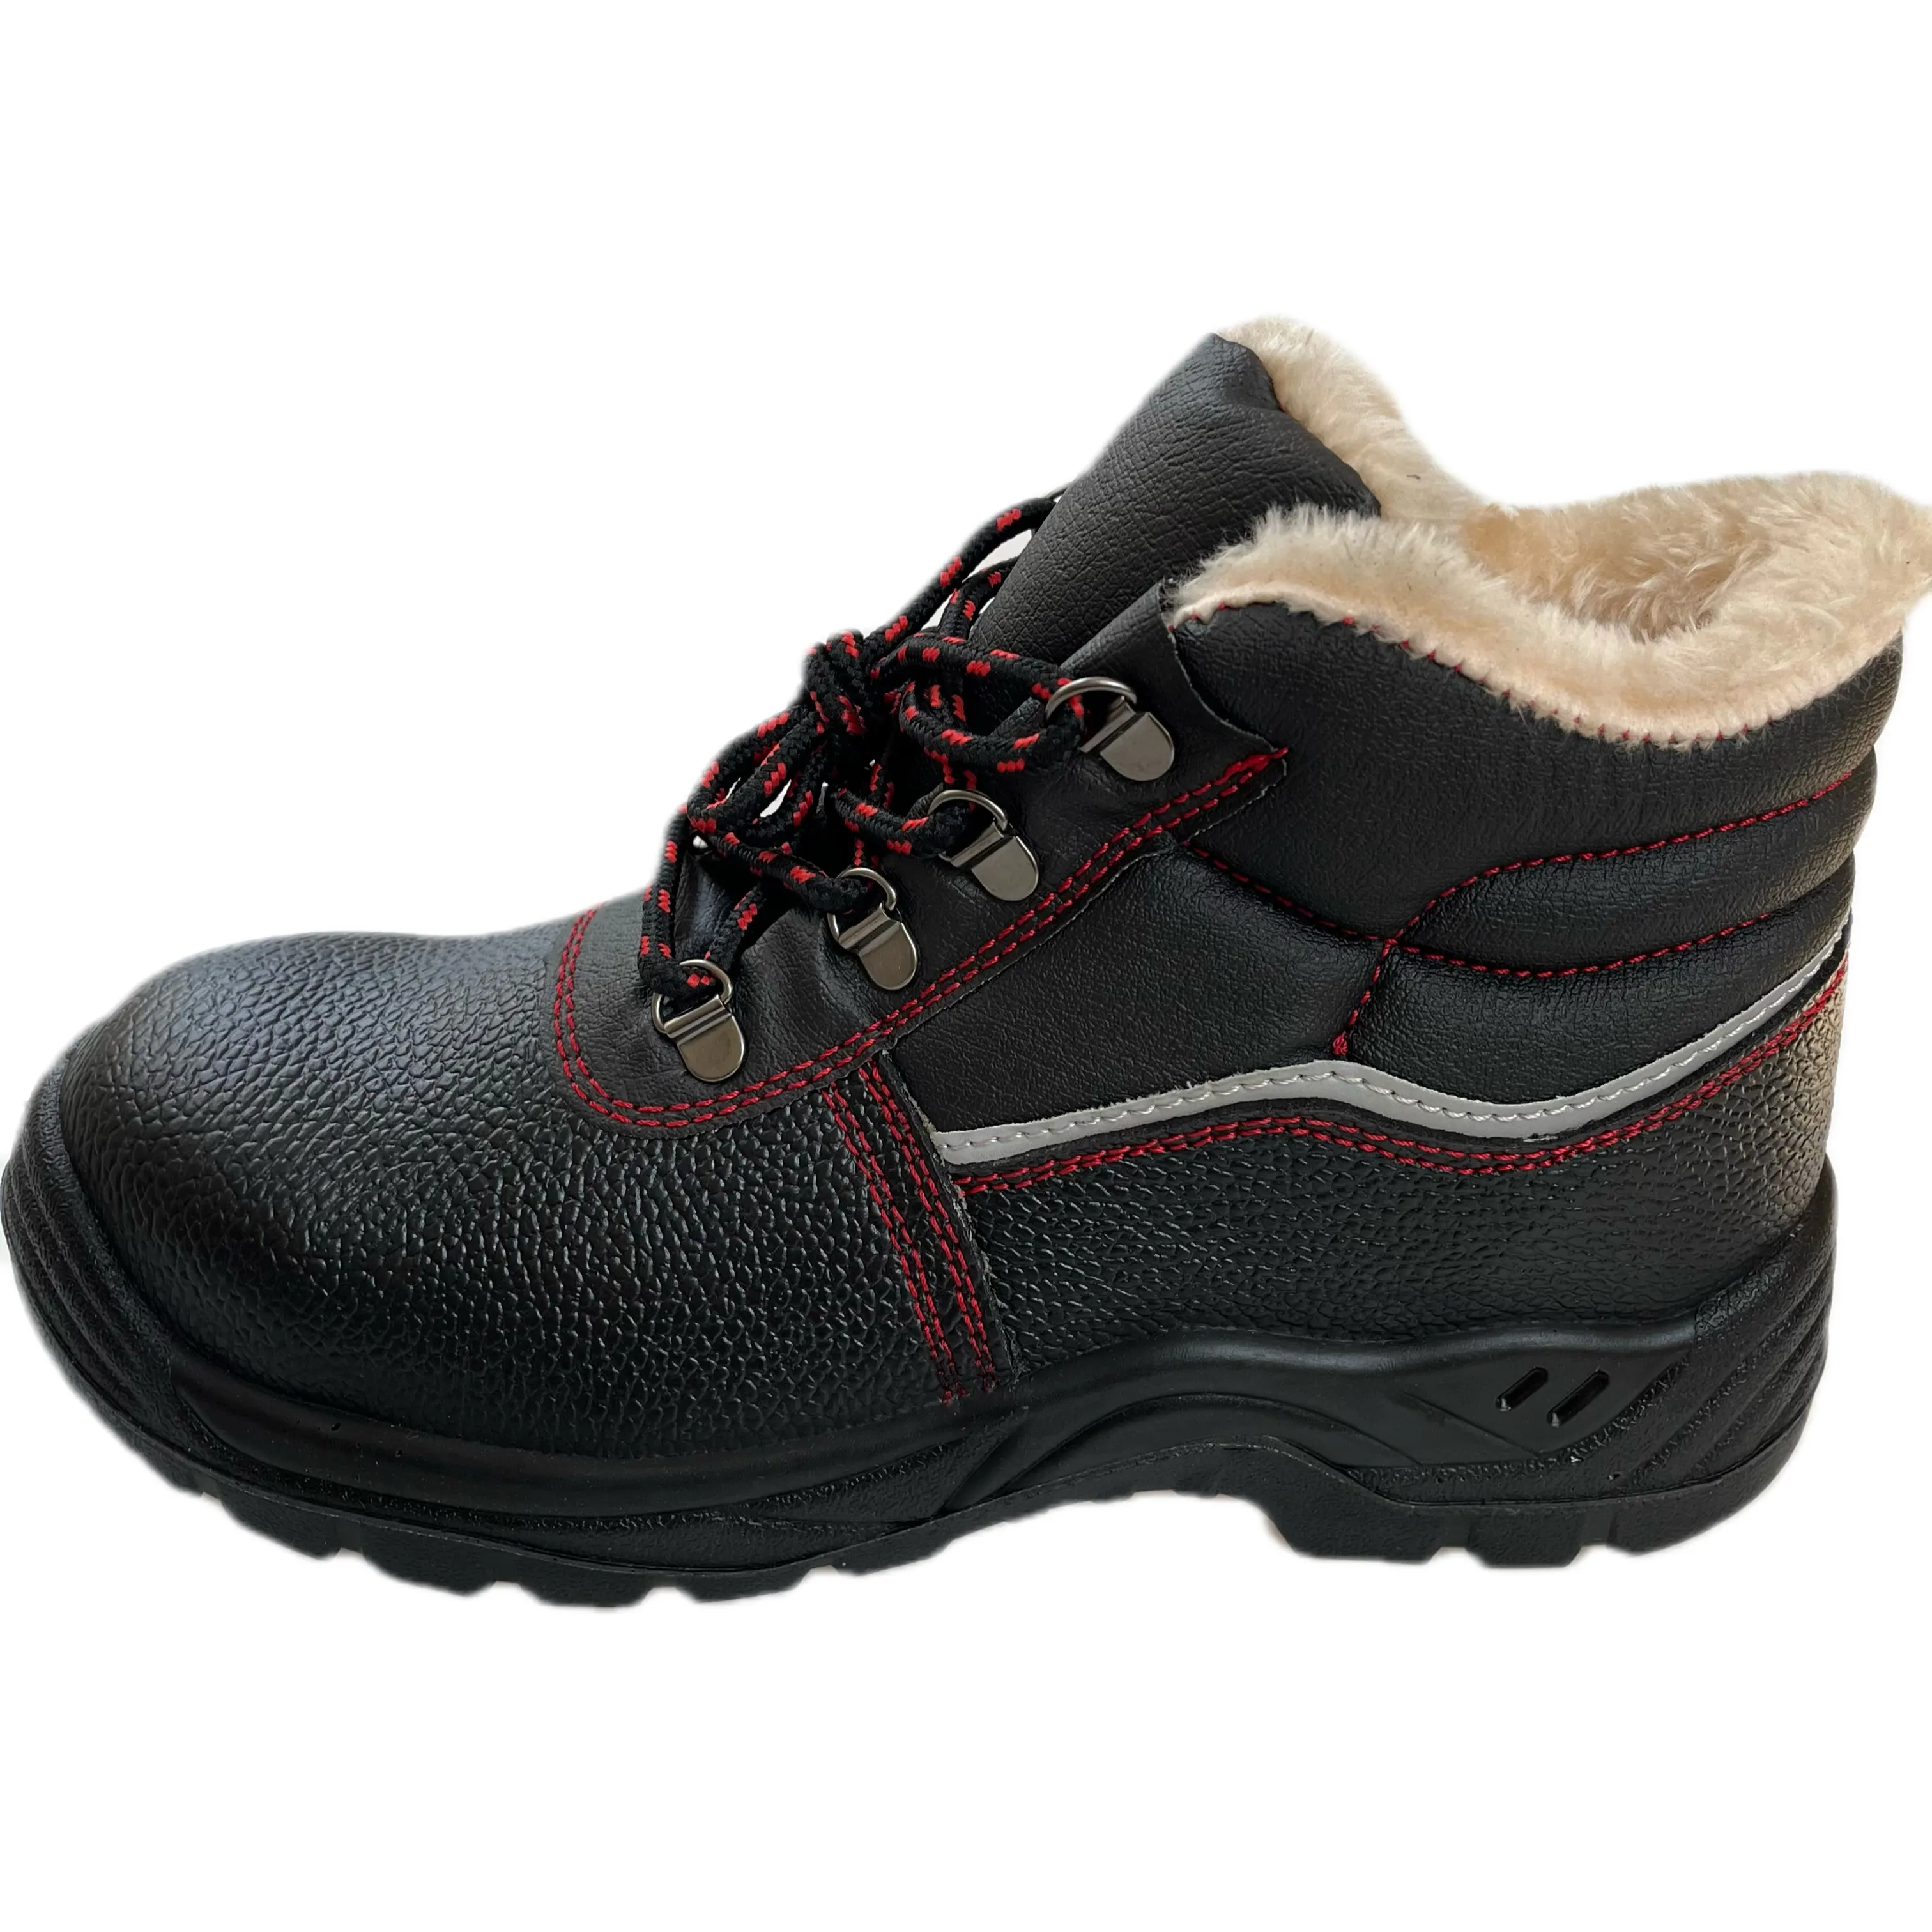 Scarpe di sicurezza da uomo e donna scarpe da lavoro S3 stivali di sicurezza invernali con fodera calda e puntale in acciaio